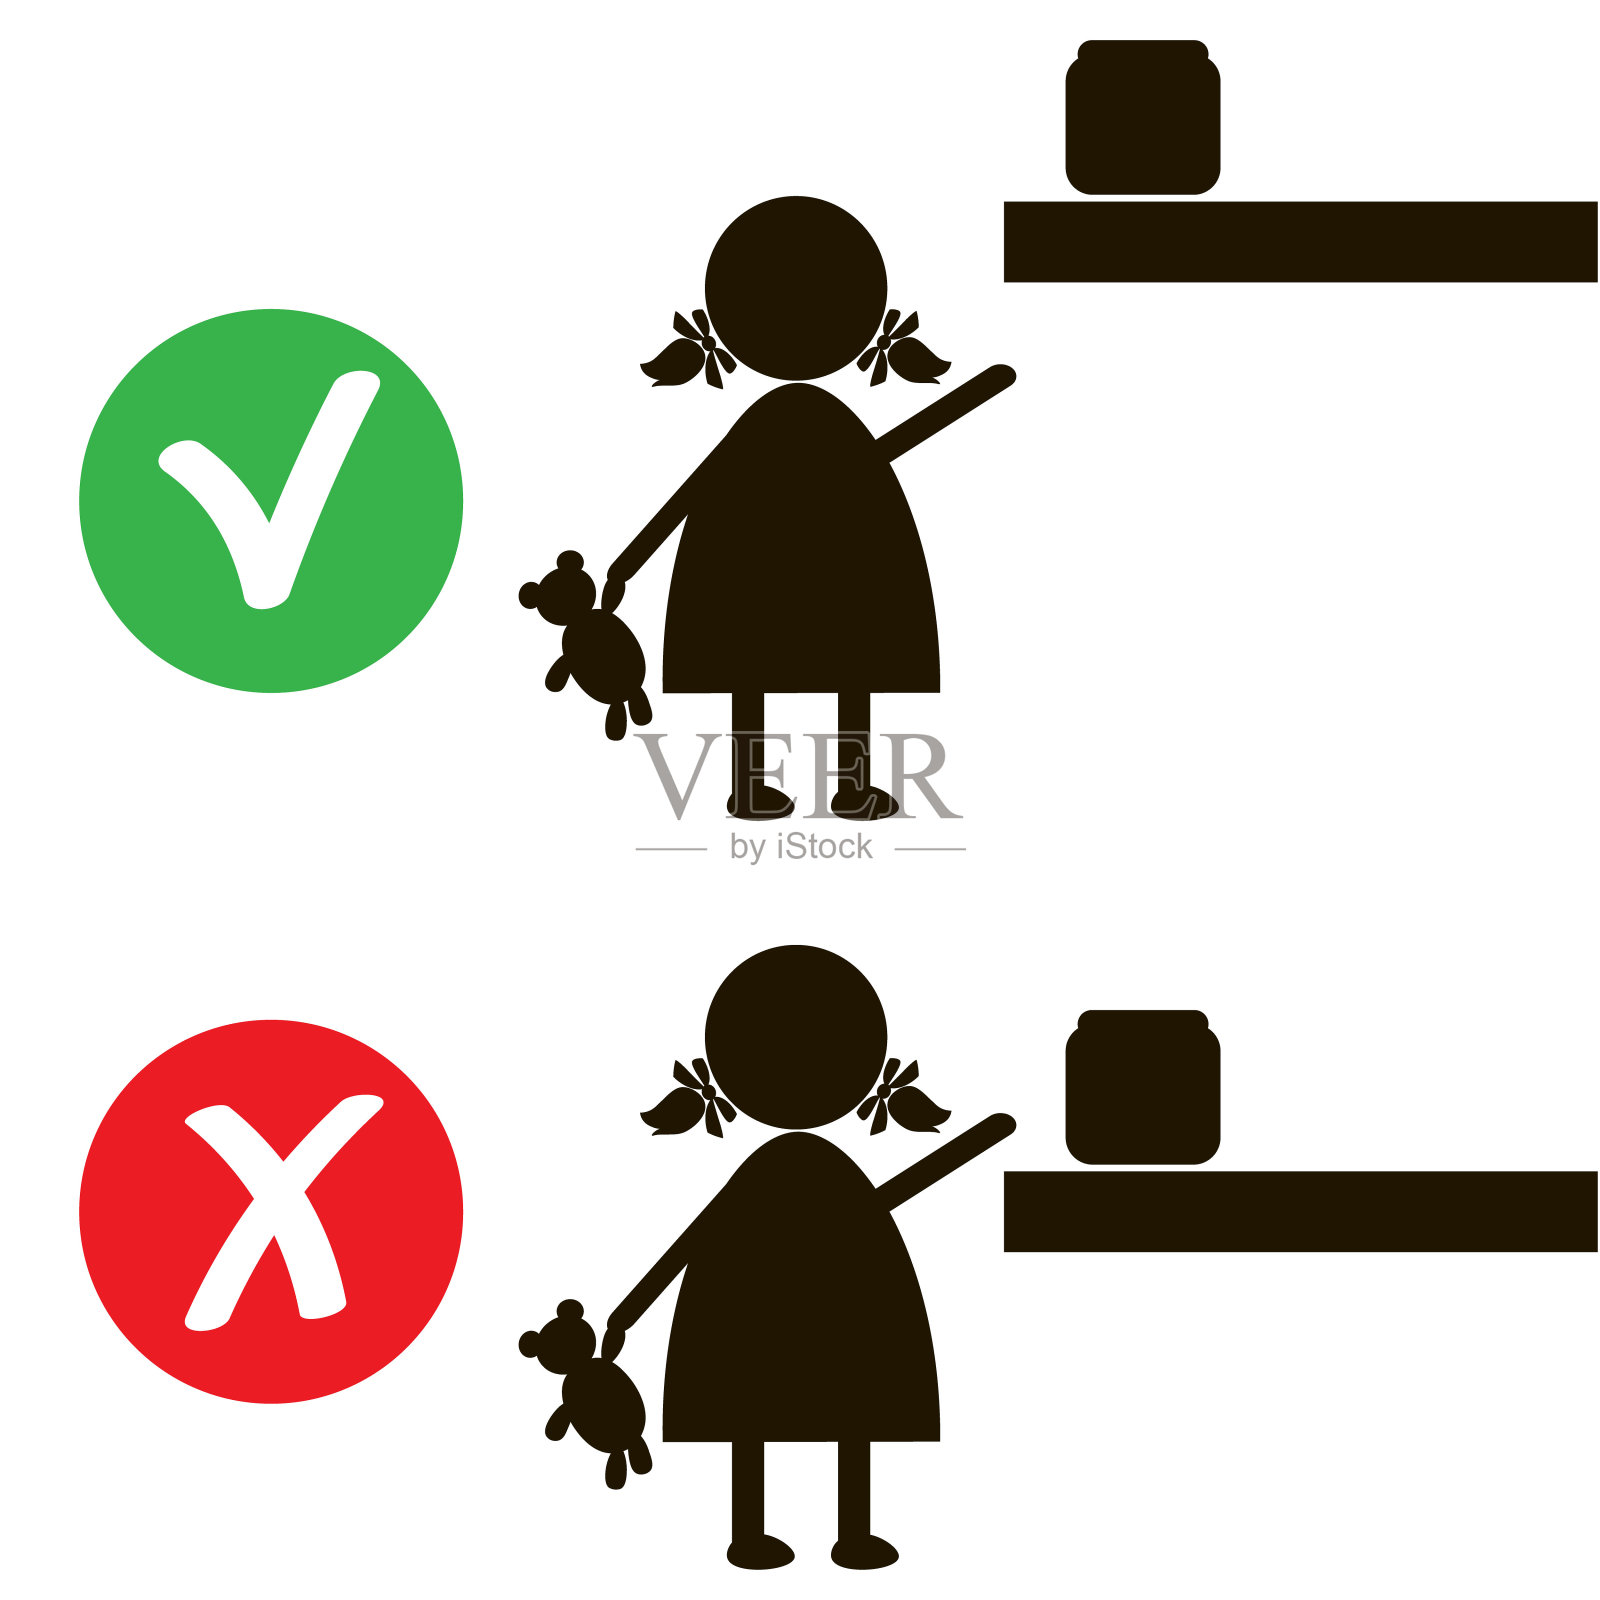 停止标志与子图标隔离在白色背景。儿童禁止矢量插图。孩子是不允许的形象。婴儿是被禁止的。小女孩接触危险物品家居化学品插画图片素材